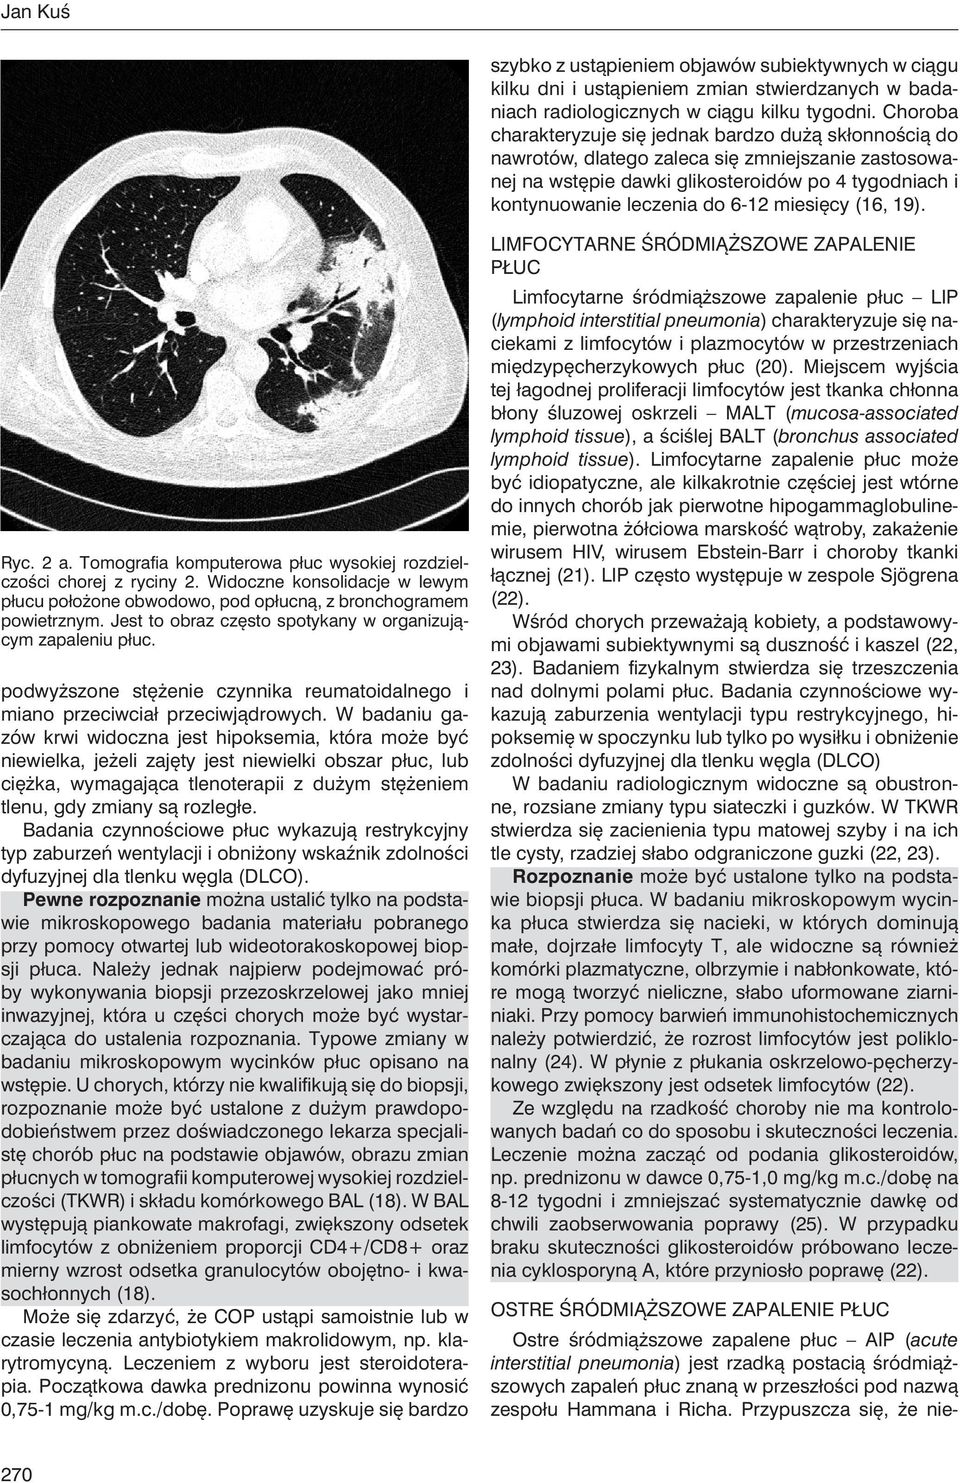 miesięcy (16, 19). Ryc. 2 a. Tomografia komputerowa płuc wysokiej rozdzielczości chorej z ryciny 2. Widoczne konsolidacje w lewym płucu położone obwodowo, pod opłucną, z bronchogramem powietrznym.